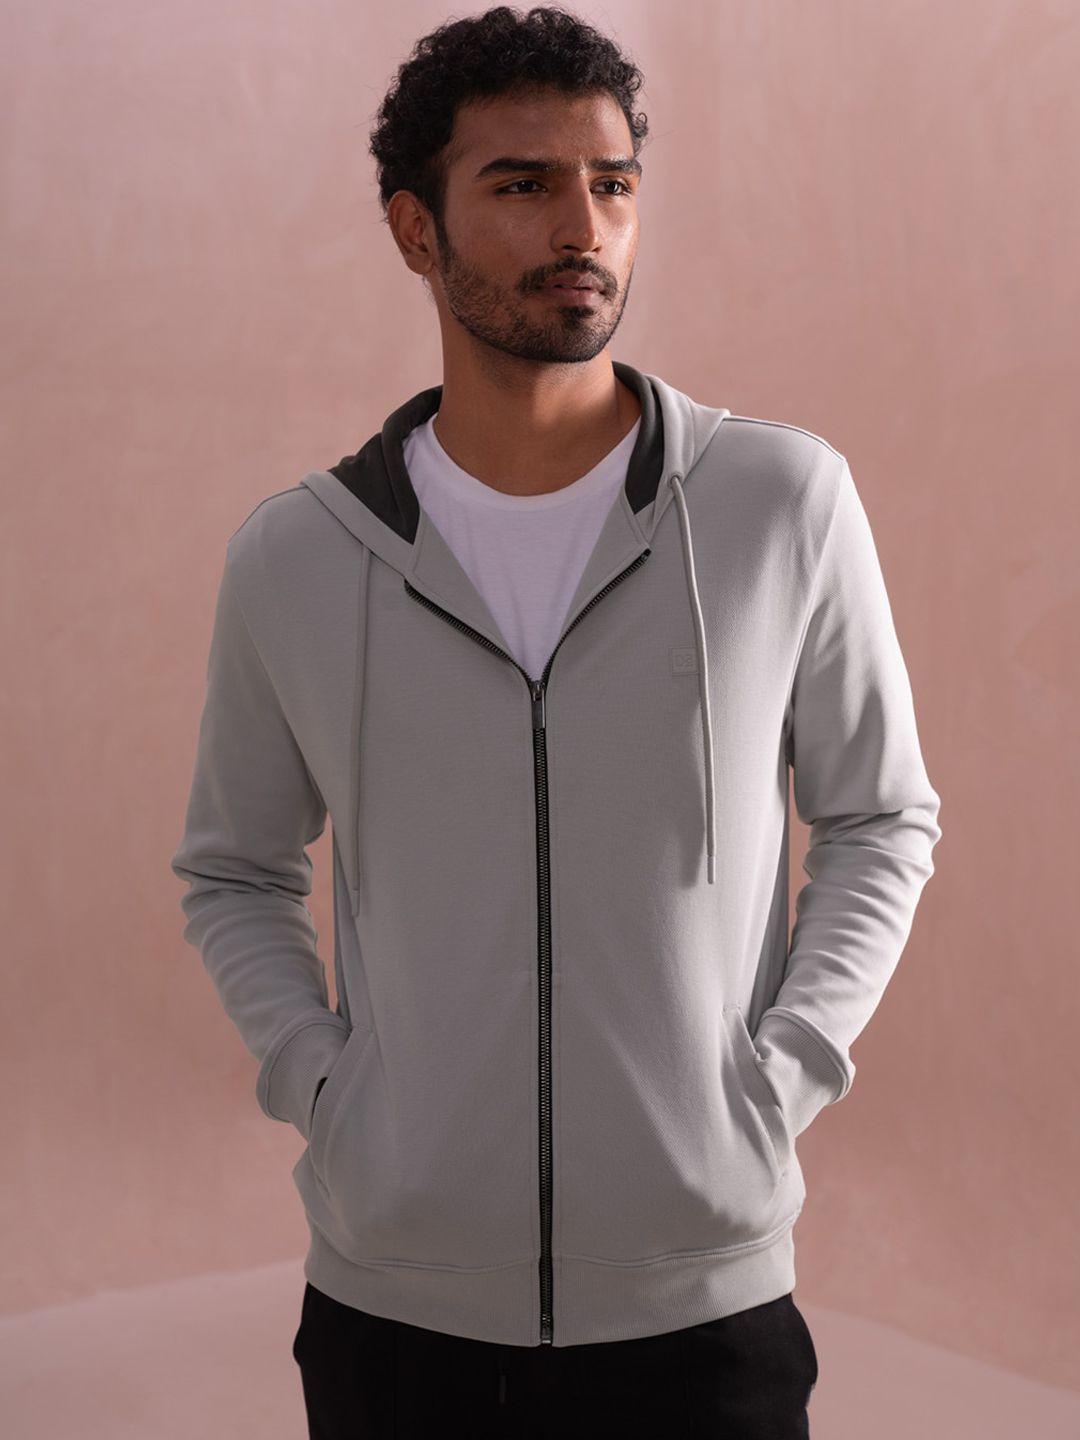 damensch-statement-elemental-soft-premium-cotton-blend-zipper-hoodie-sweatshirt